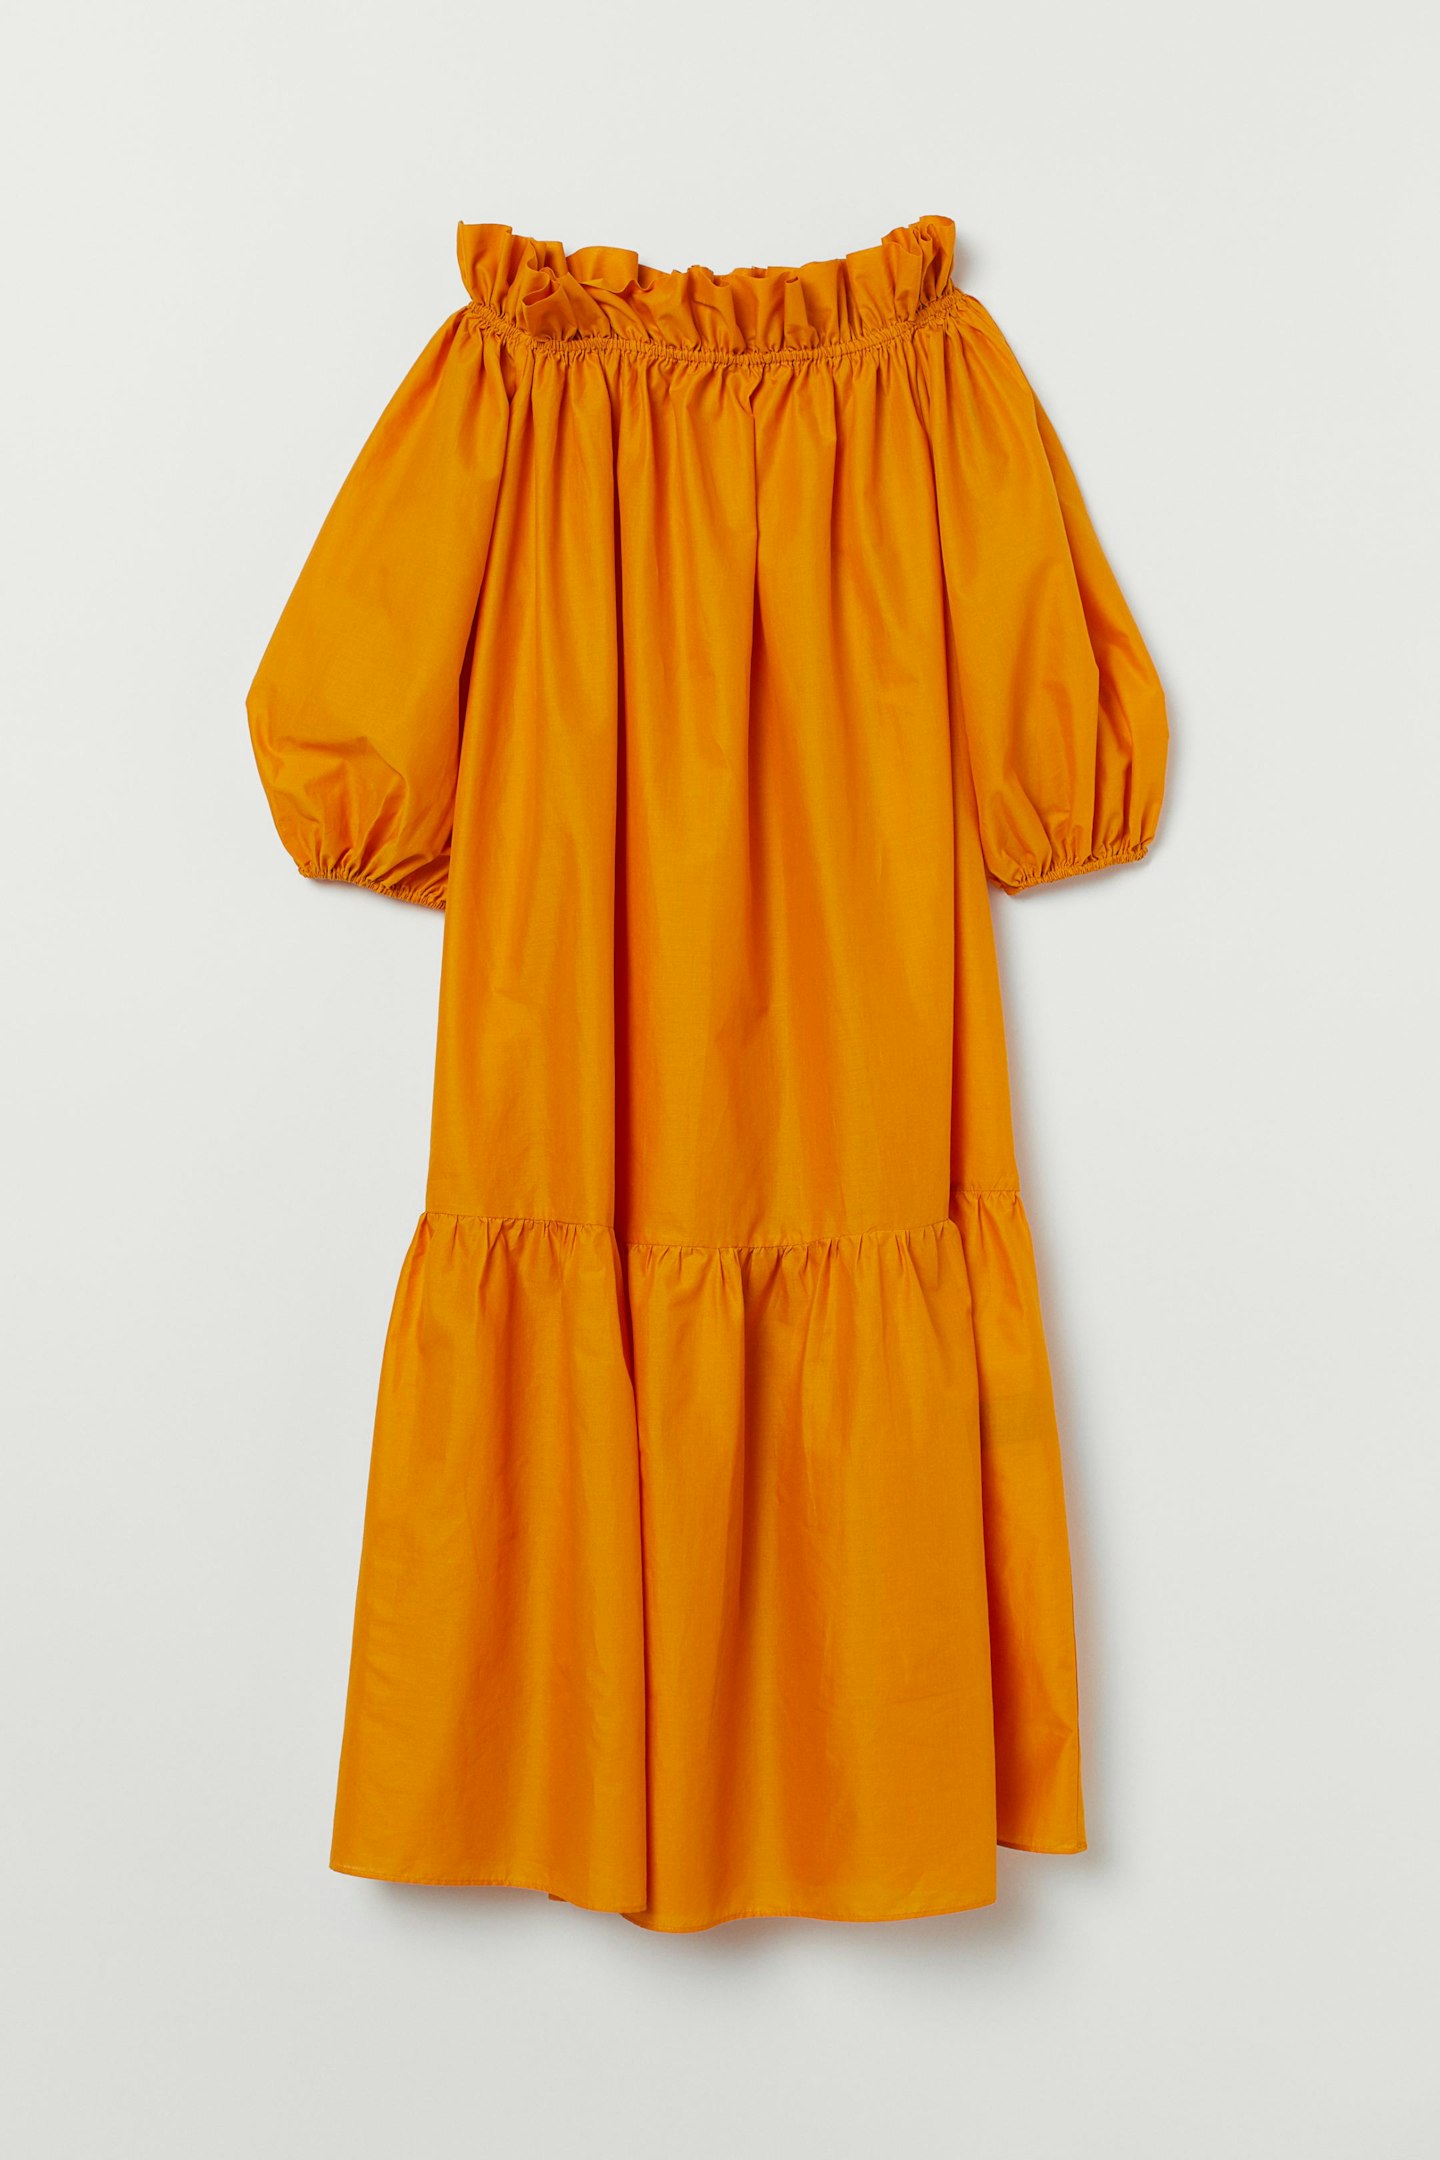 H&M, Off-the-shoulder dress, £24.99